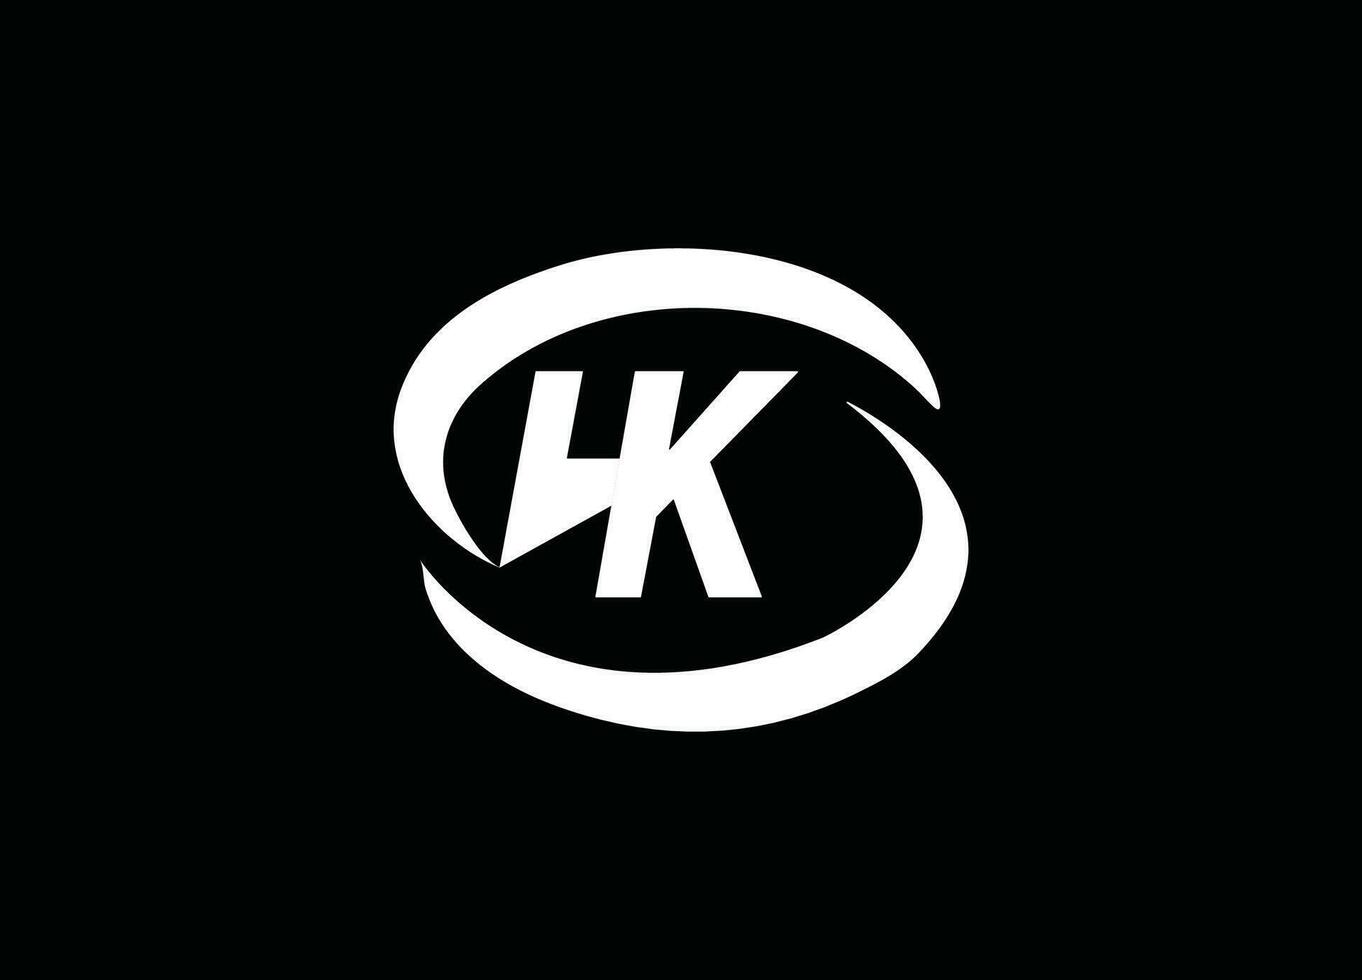 kh, hk , hk lettre logo, hk conception, hk entreprise, hk studio , hk logo, hk créatif, hkinitiales vecteur